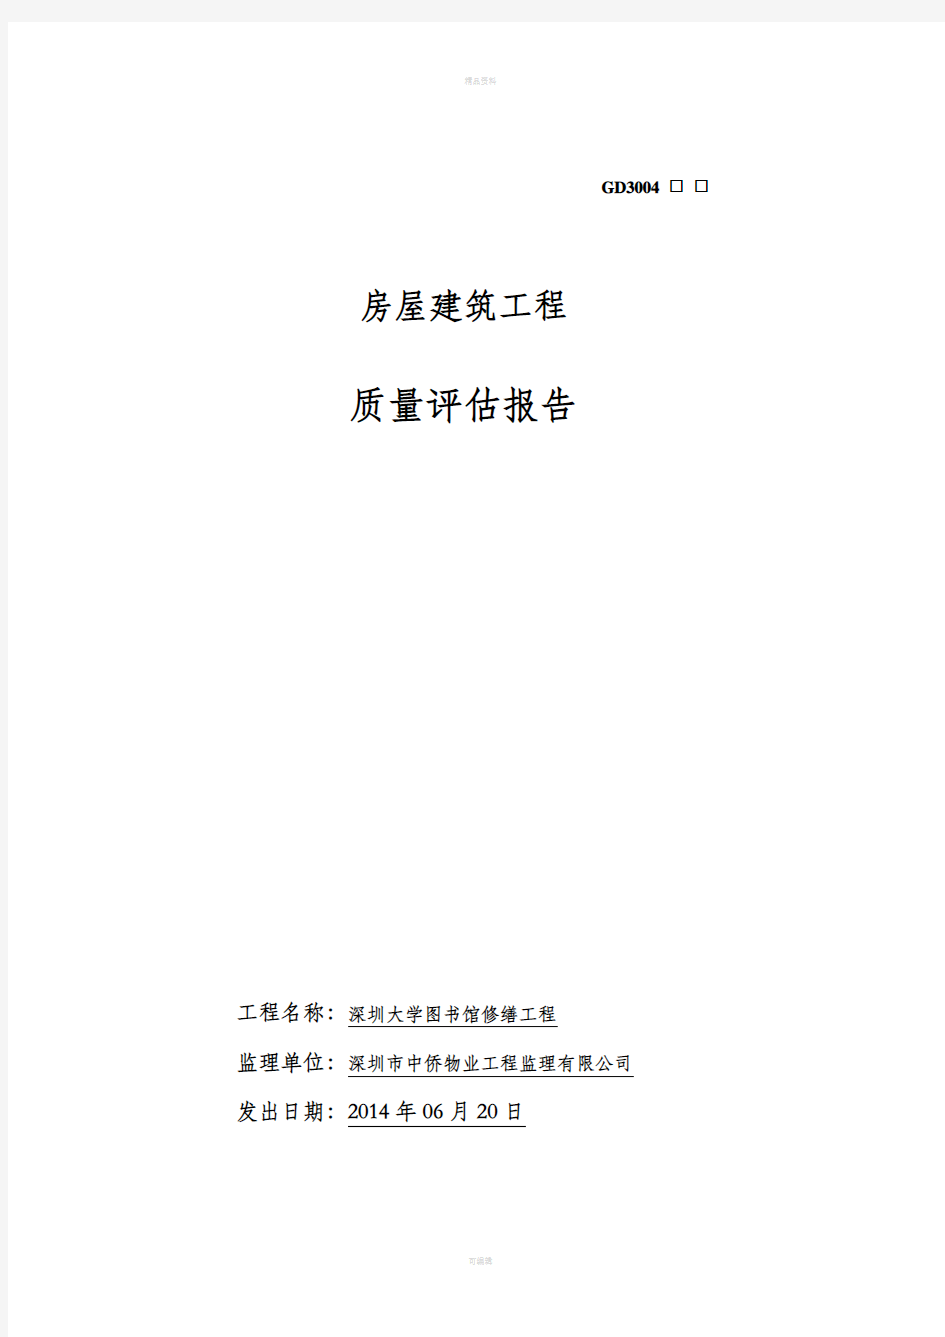 深圳大学图书馆装饰装修工程质量评估报告分析